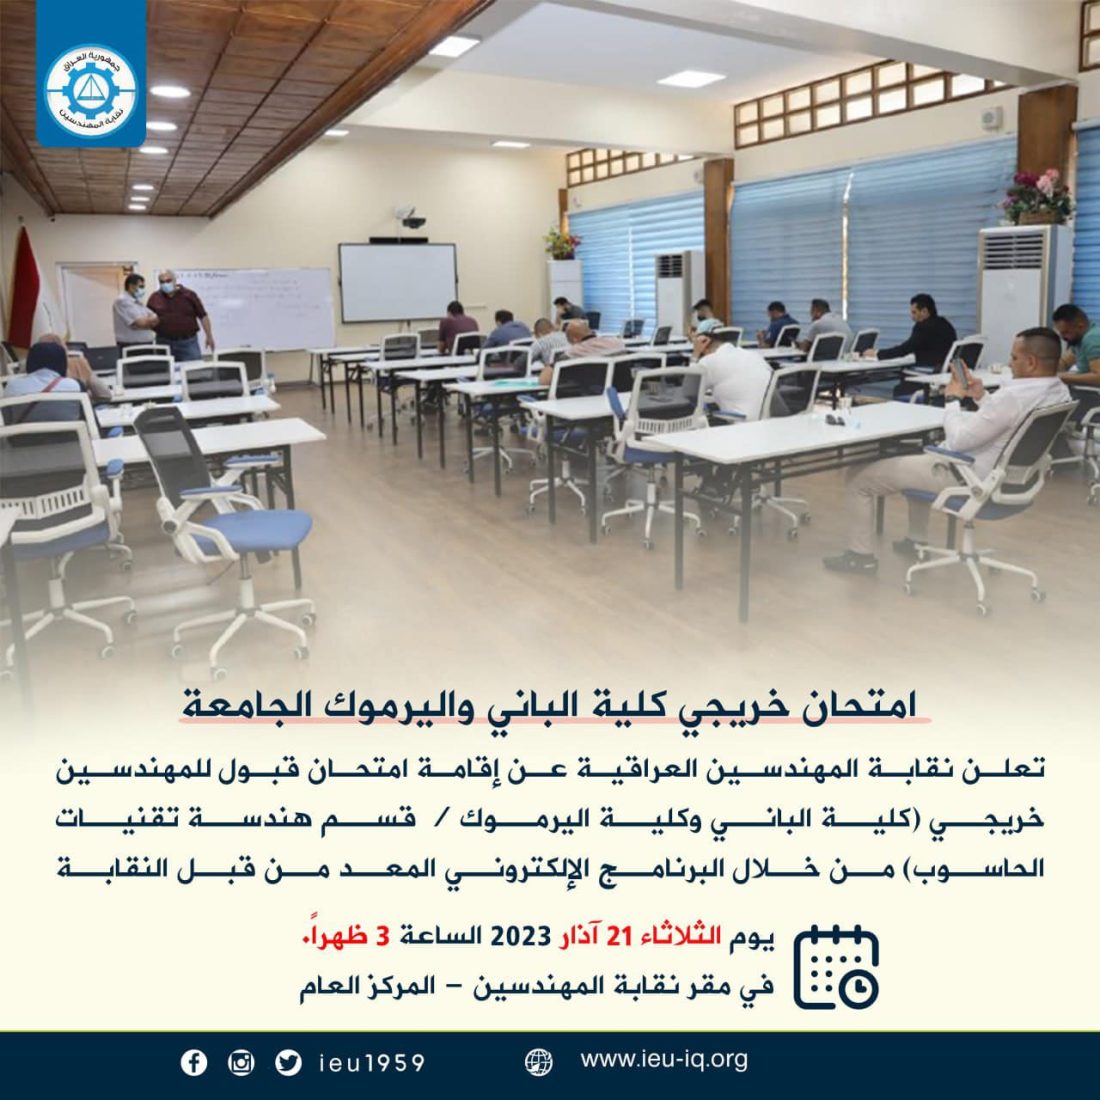 نقابة المهندسين العراقية تعلن عن إقامة امتحان قبول للمهندسين خريجي (كلية الباني وكلية اليرموك / قسم هندسة تقنيات الحاسوب)